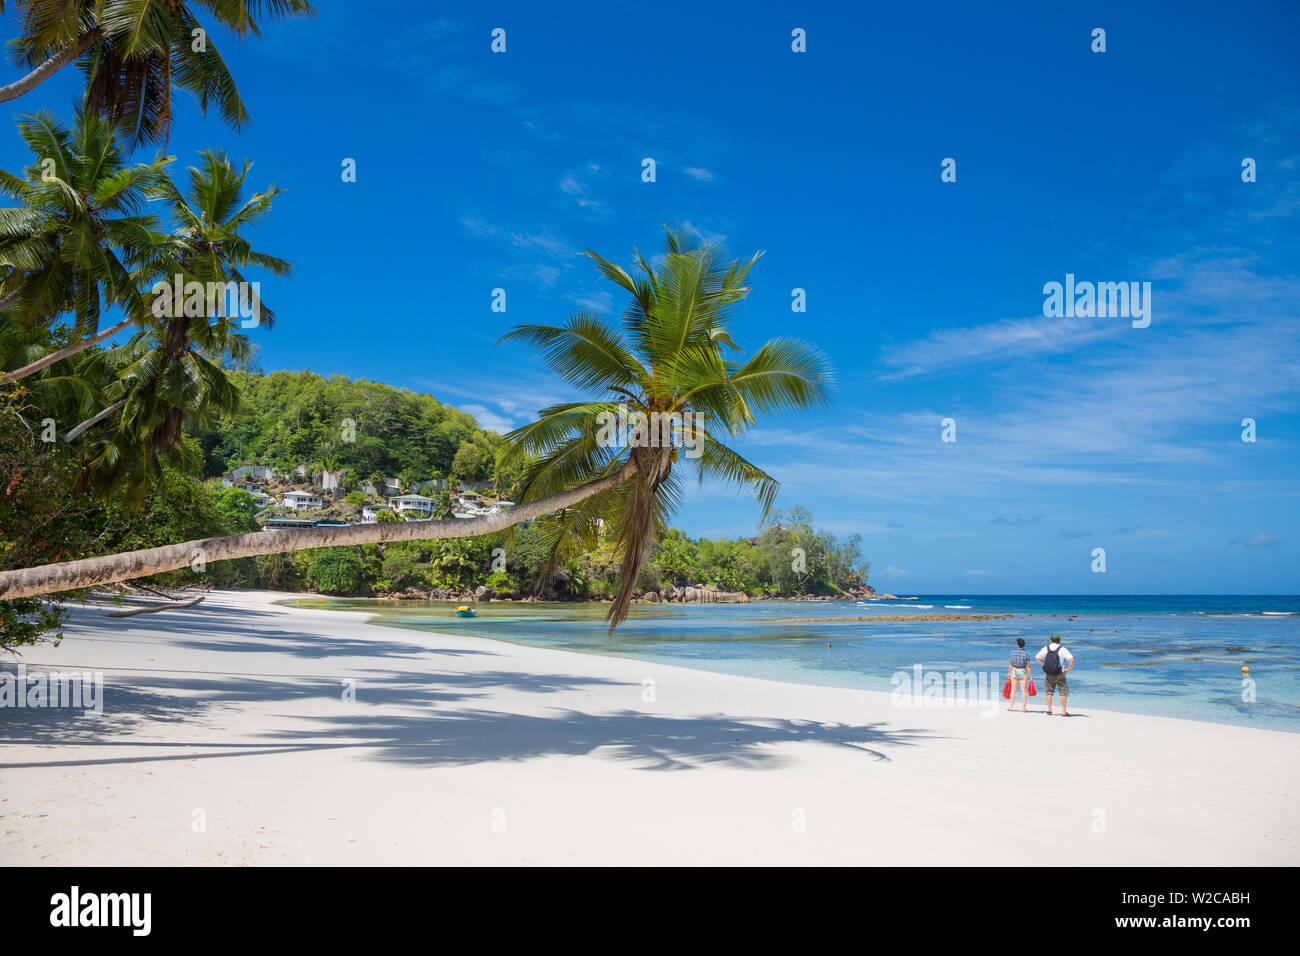 Palmeras y playa tropical, en el sur de Mahé, Seychelles Foto de stock